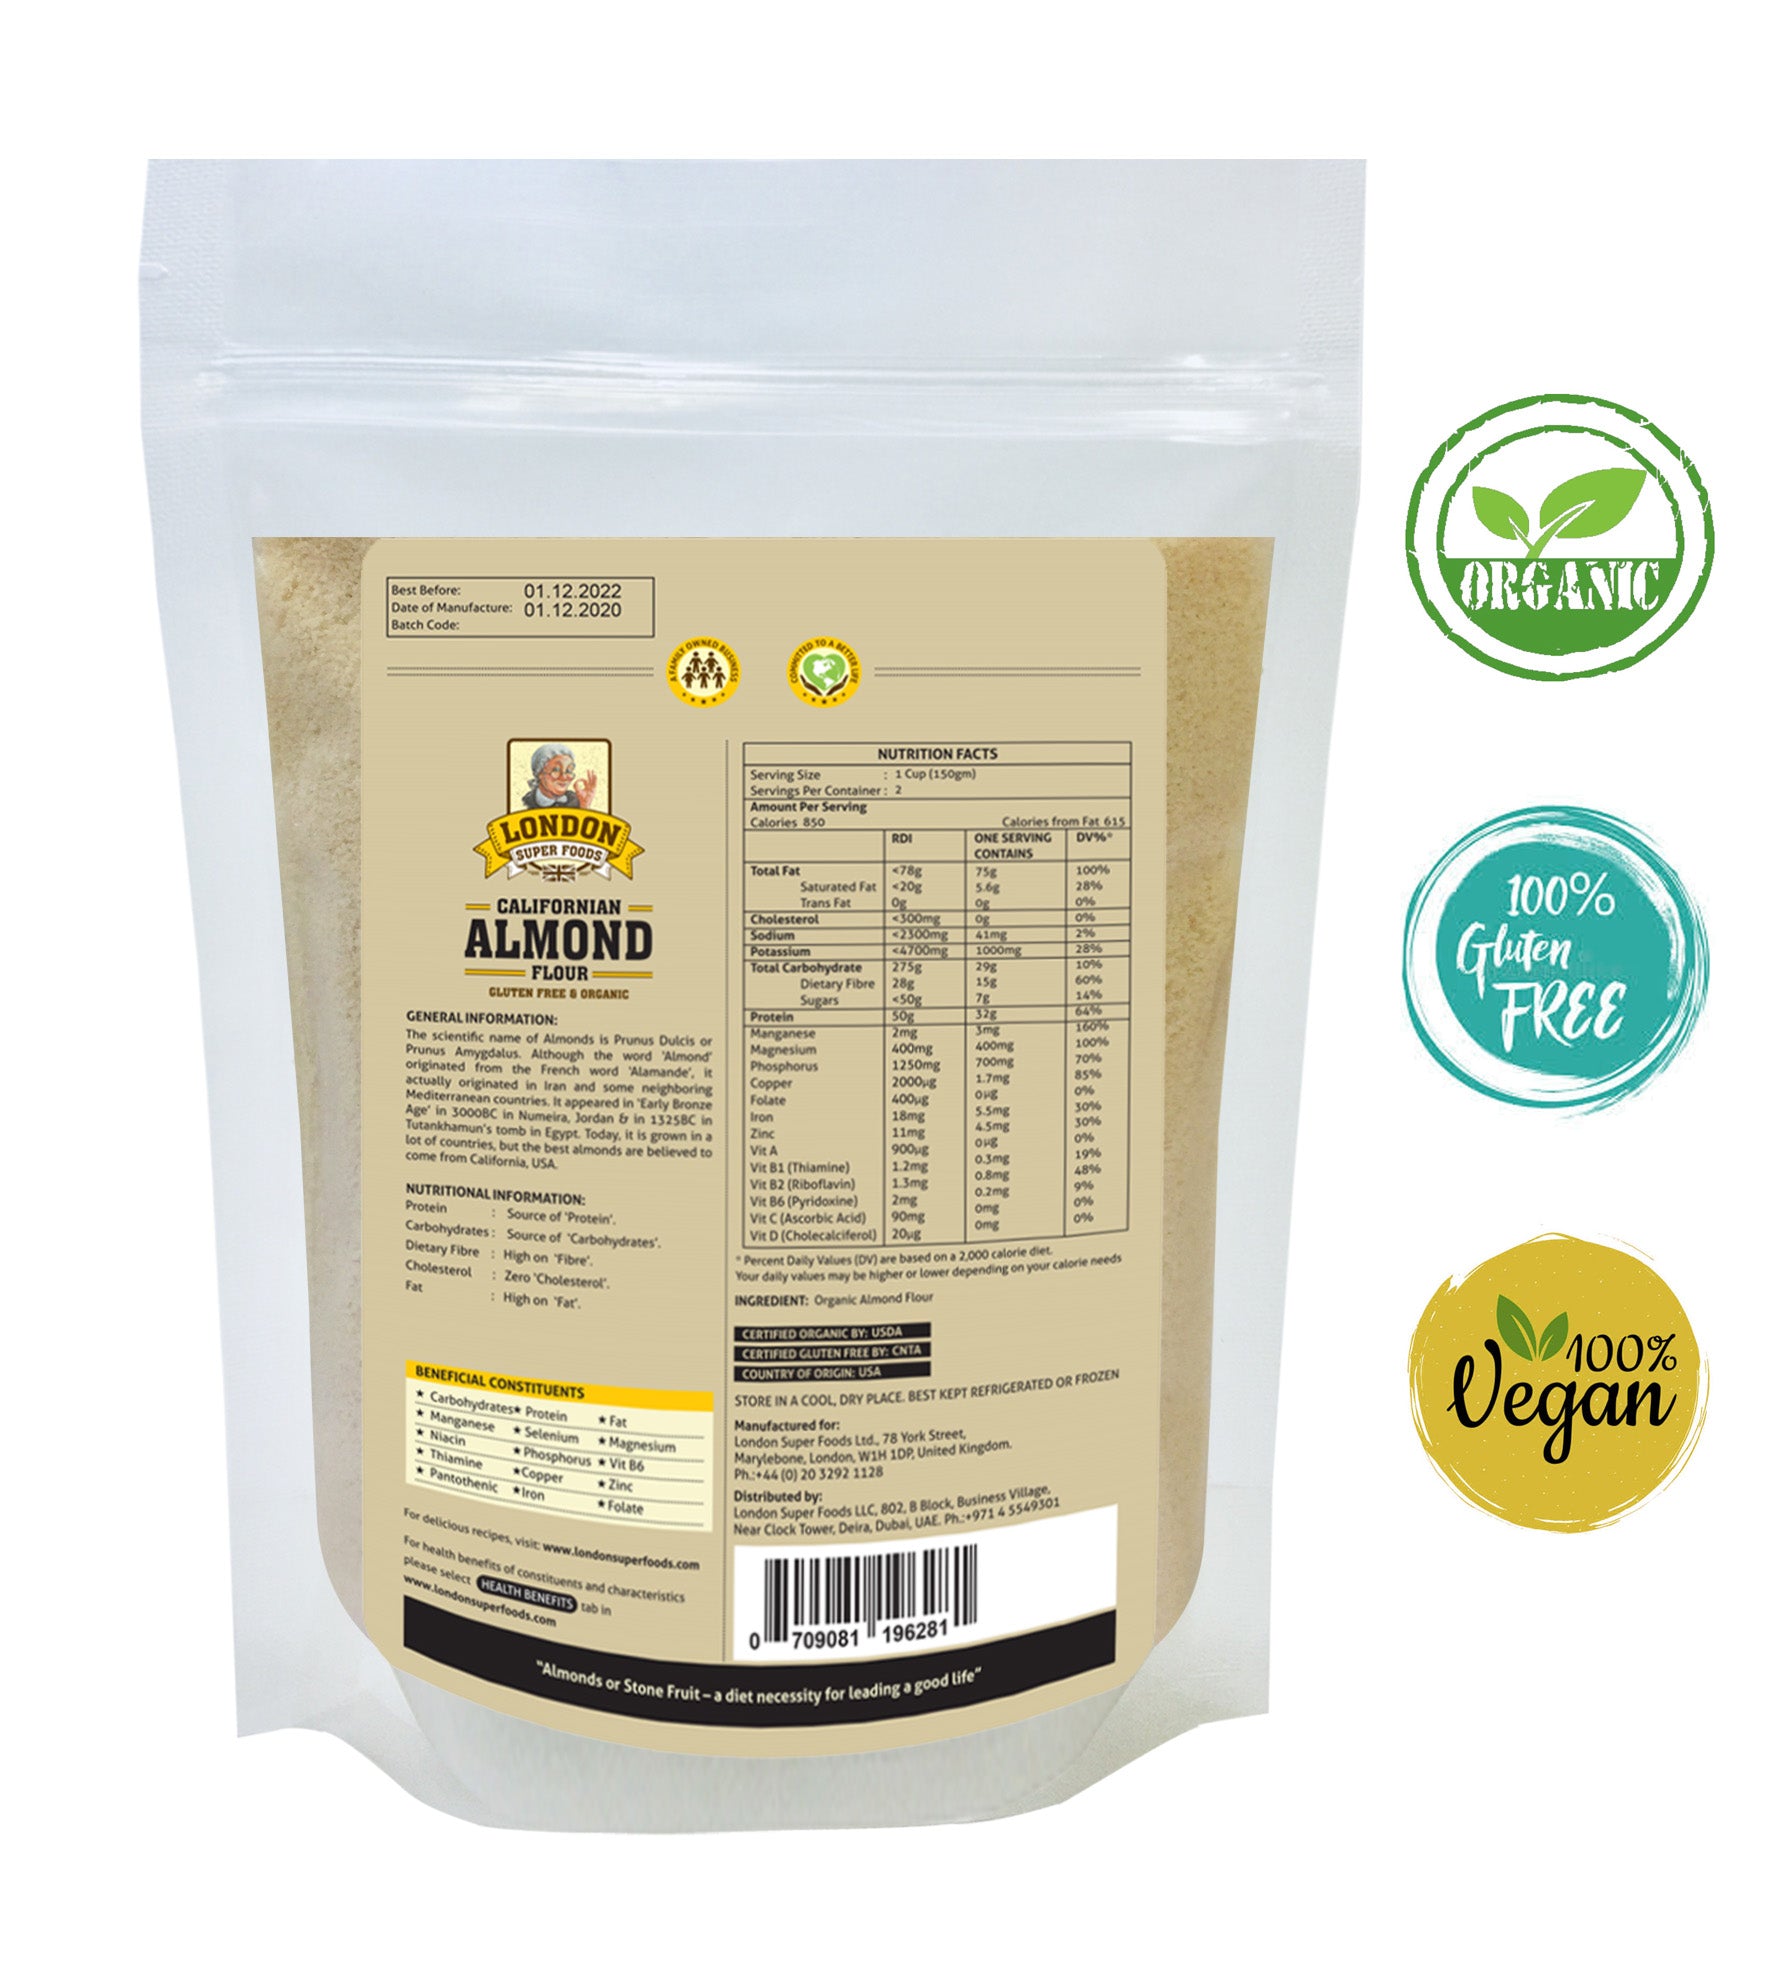 LONDON SUPER FOODS Organic Californian Almond Flour, 300g - Gluten Free